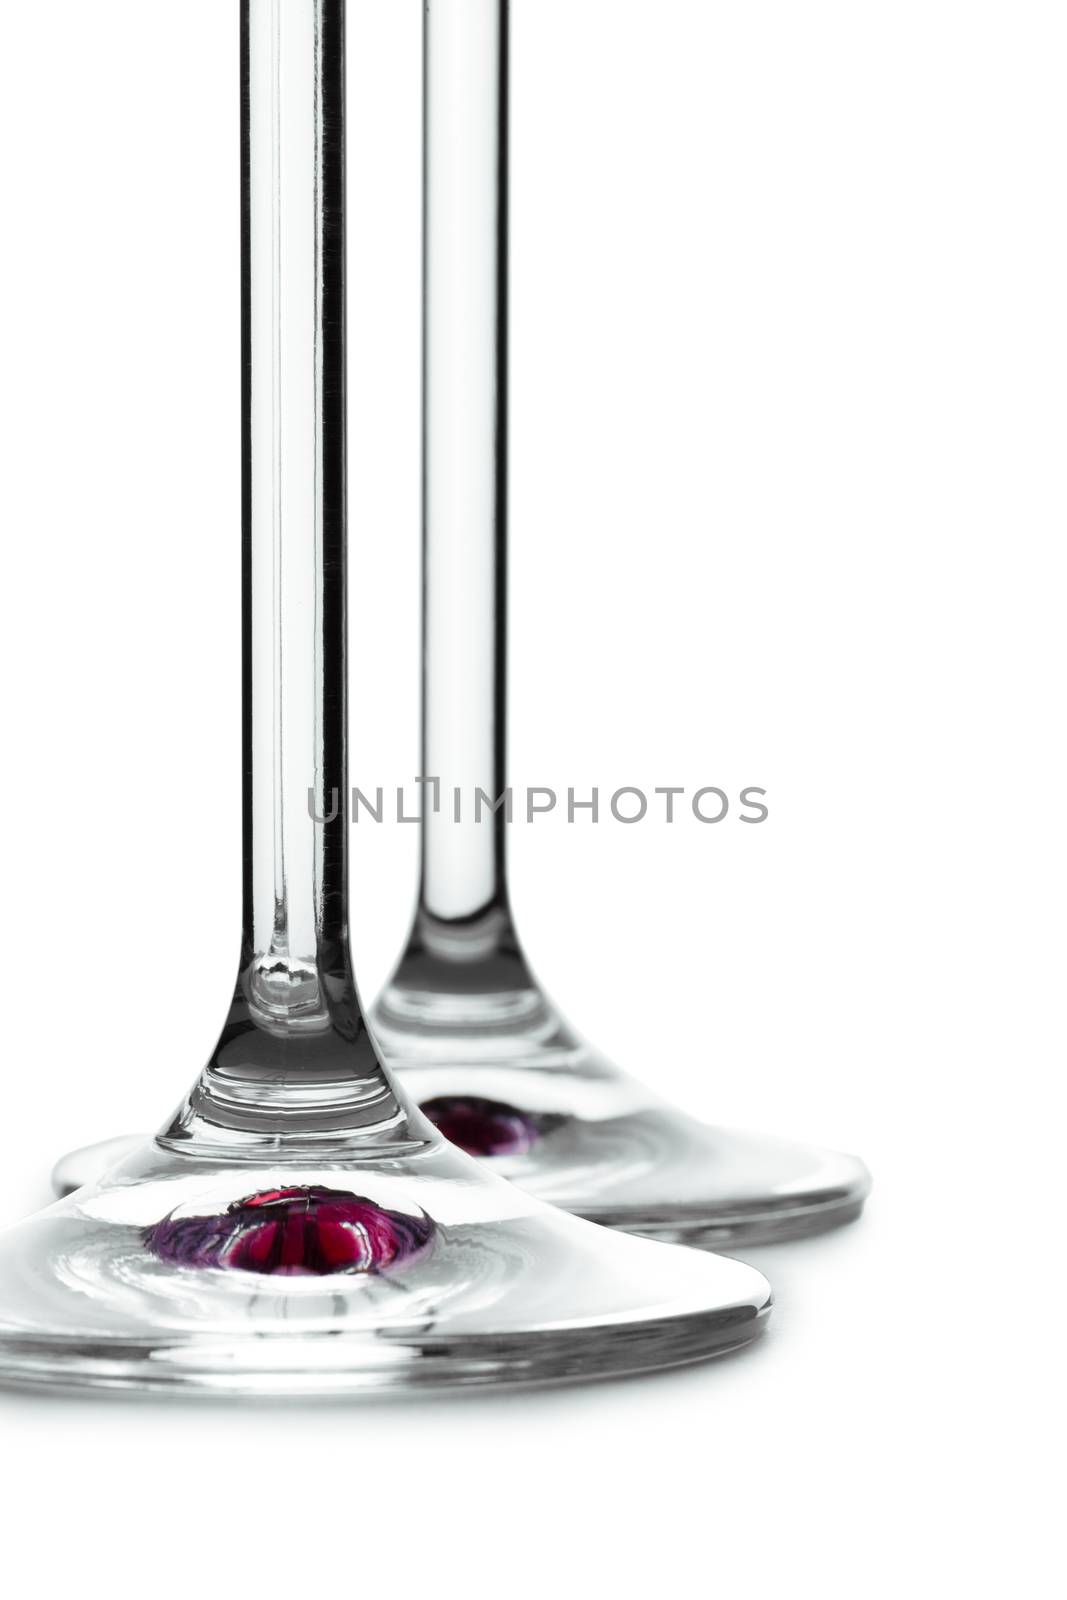 stem of wine glass